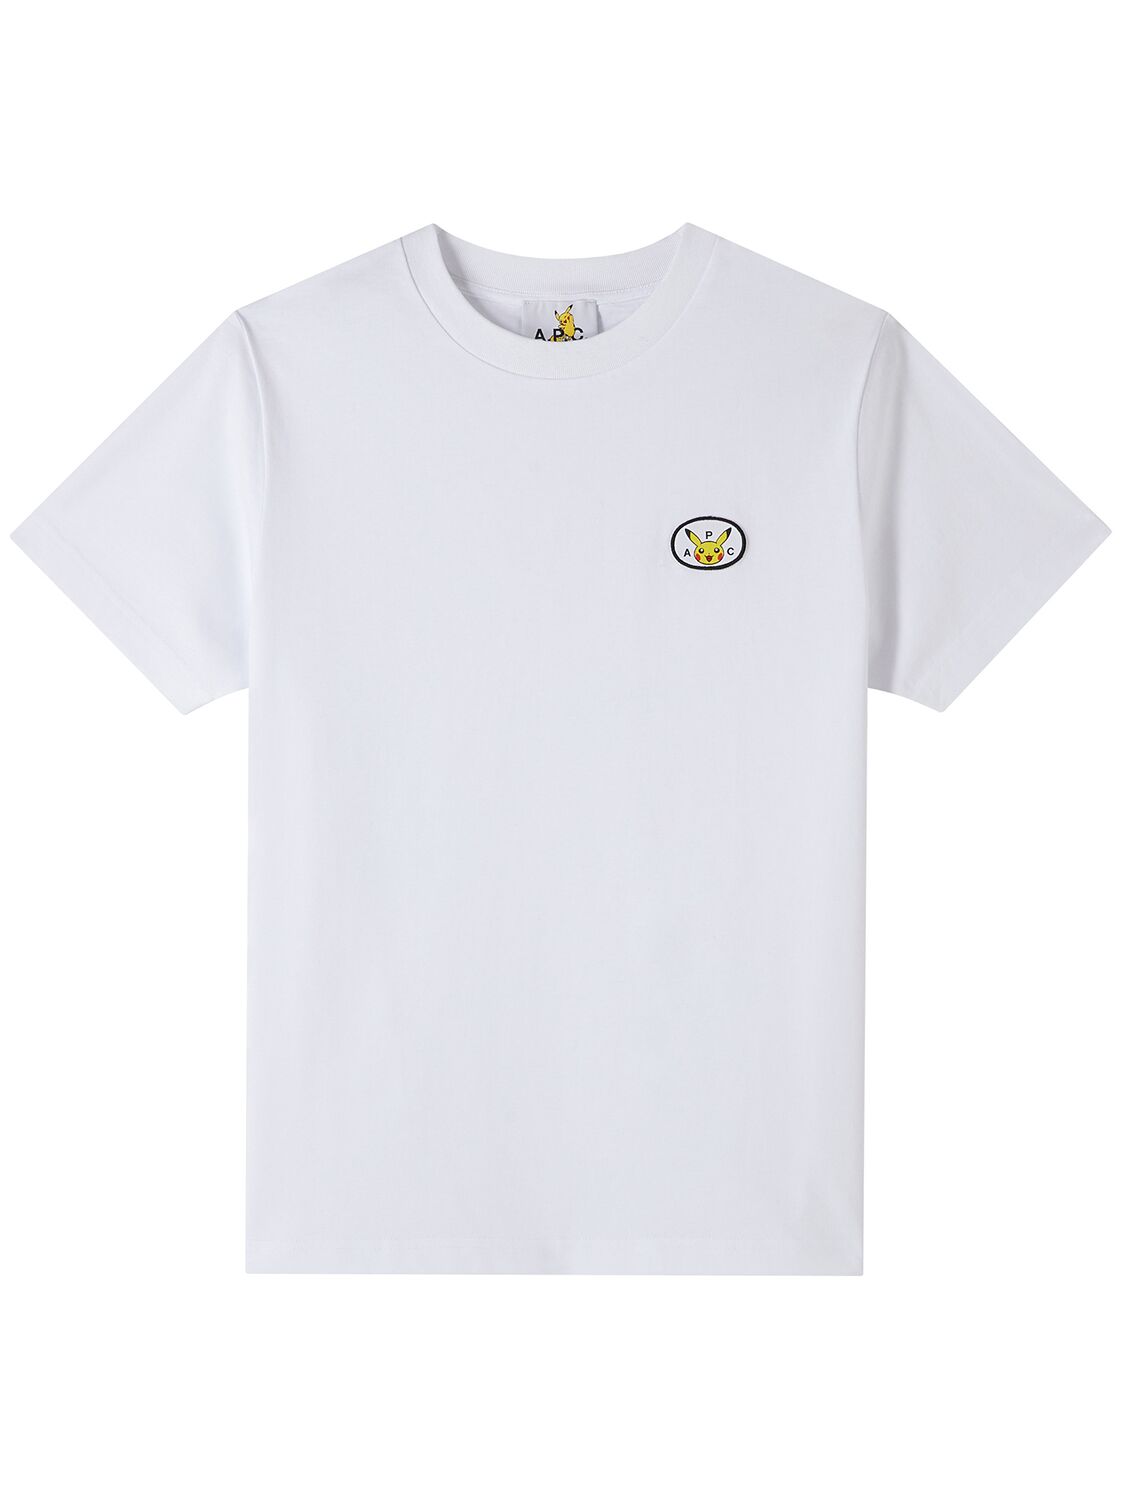 Shop Apc A.p.c. X Pokémon Organic Cotton T-shirt In White